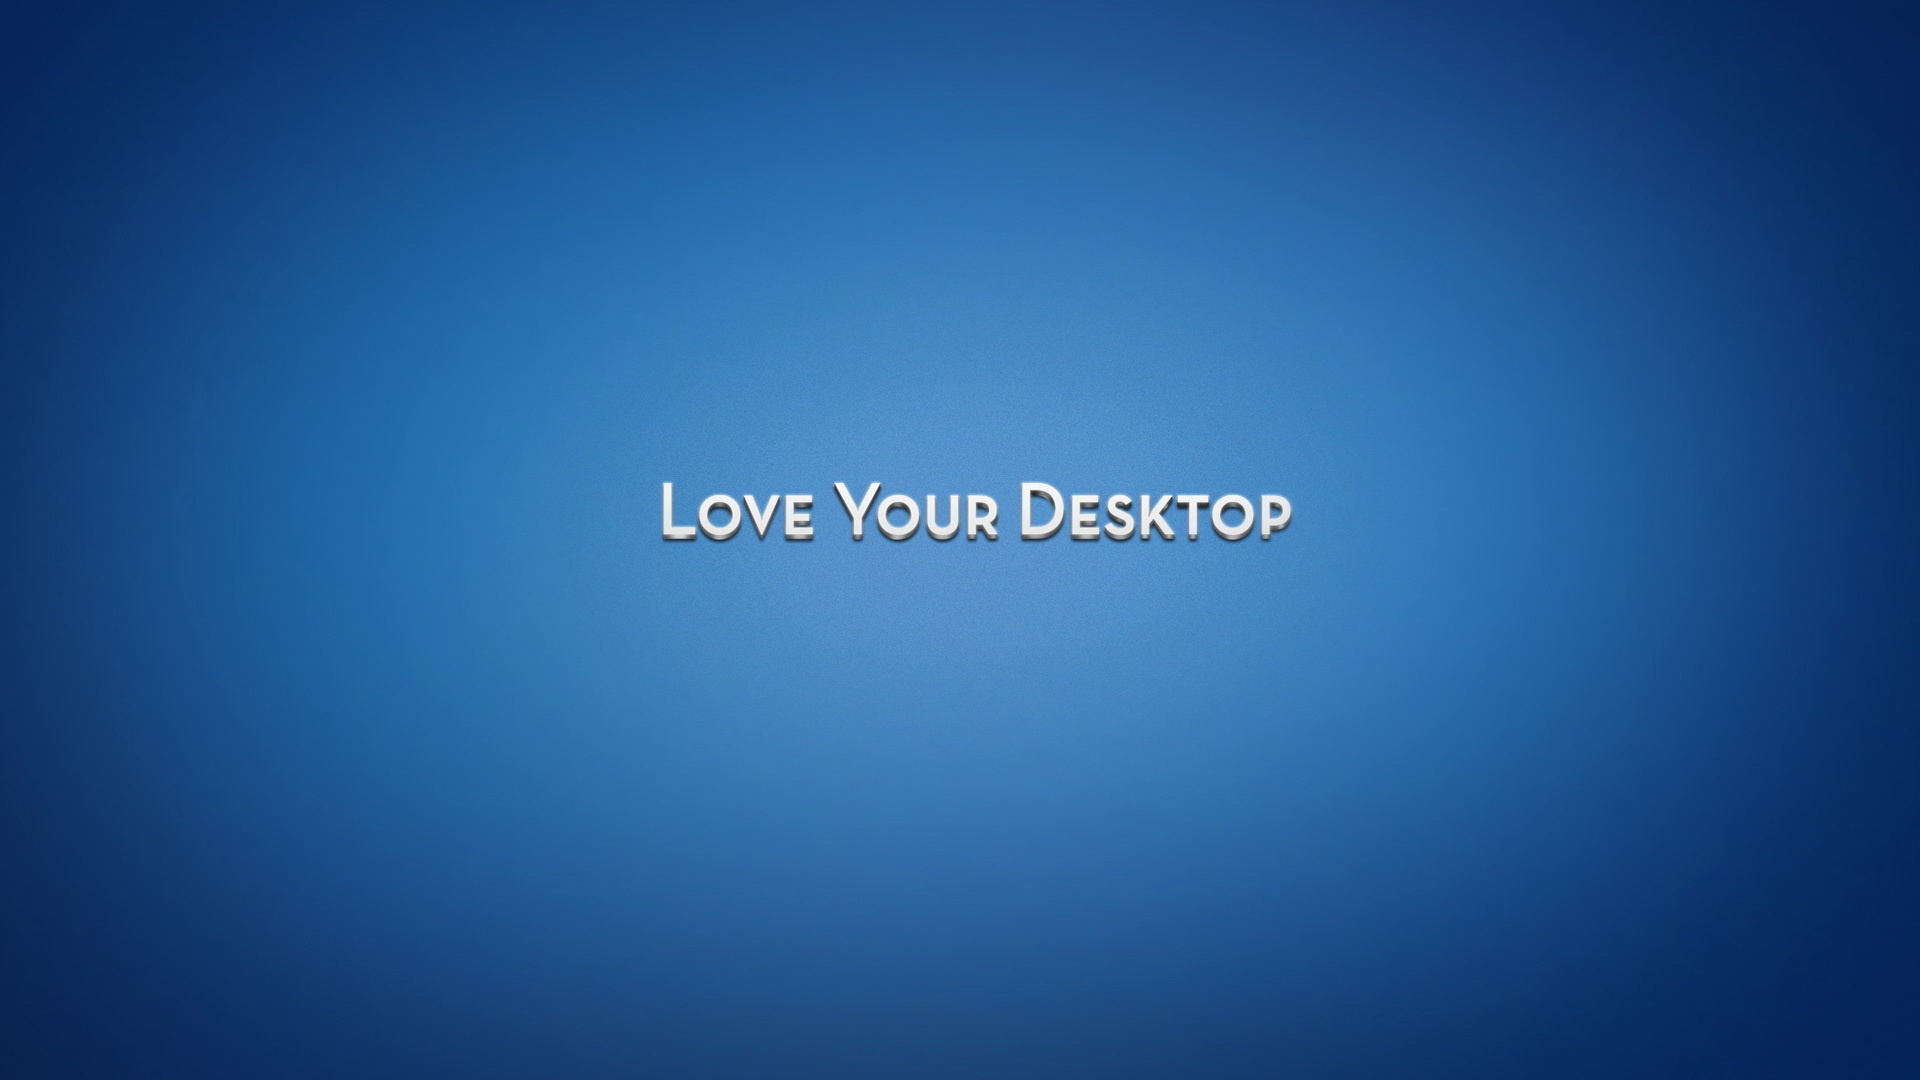 50+] Love Desktop Wallpaper Full HD - WallpaperSafari